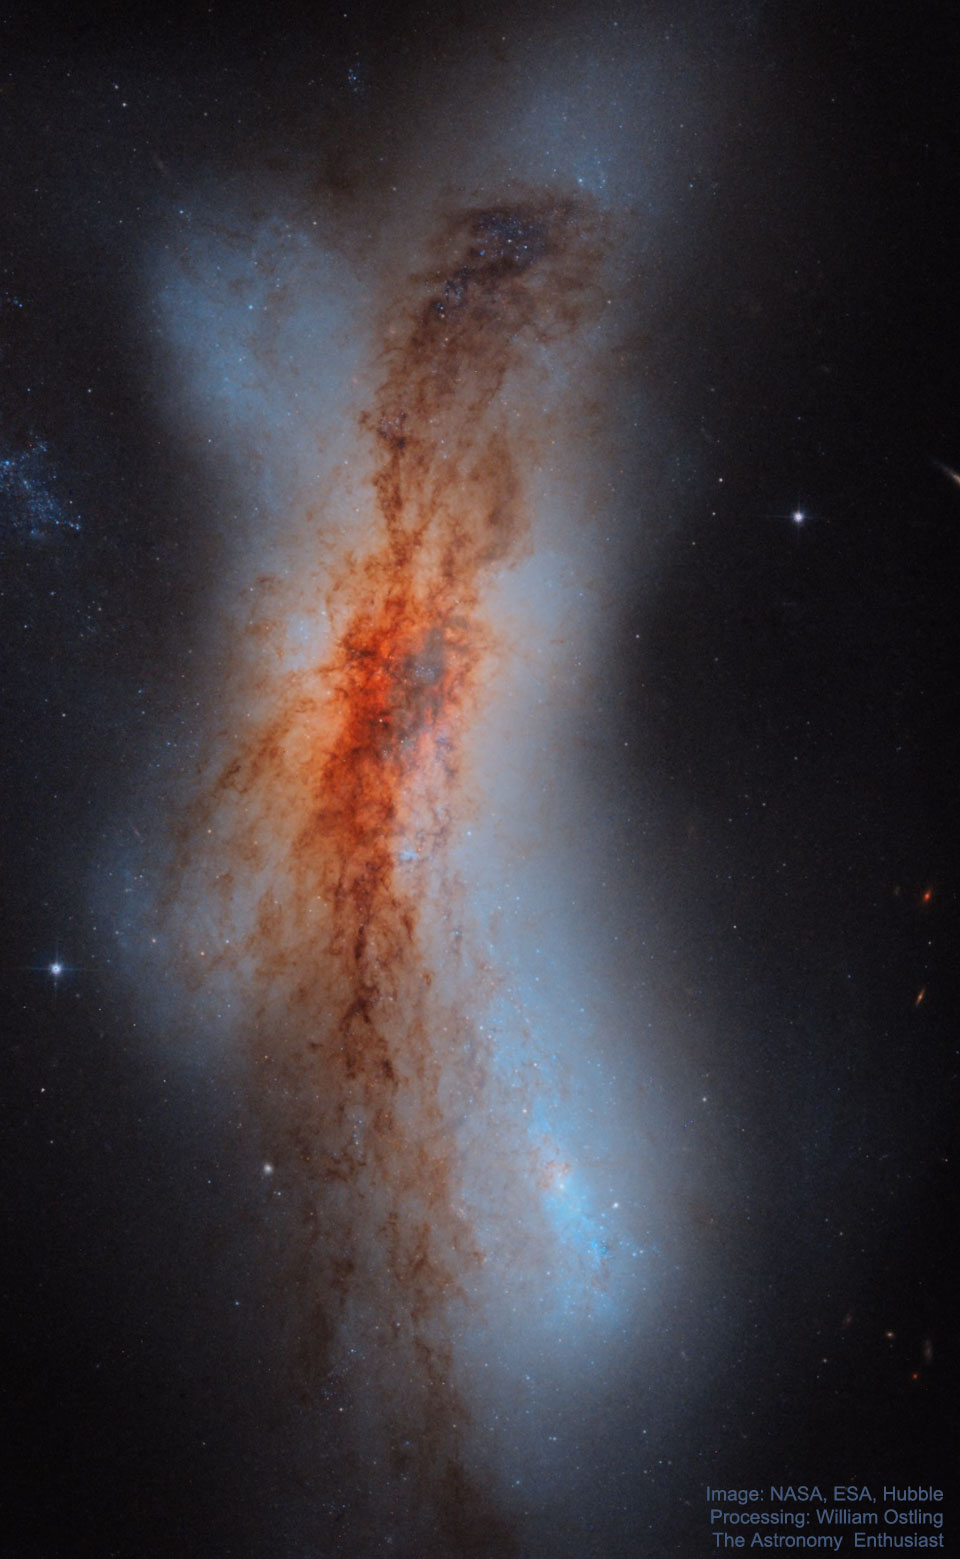 Zdjęcie przedstawia zderzające się galaktyki NGC 520 widoczne na obrazie z Kosmicznego Teleskopu Hubble'a.
Więcej szczegółowych informacji w opisie poniżej.